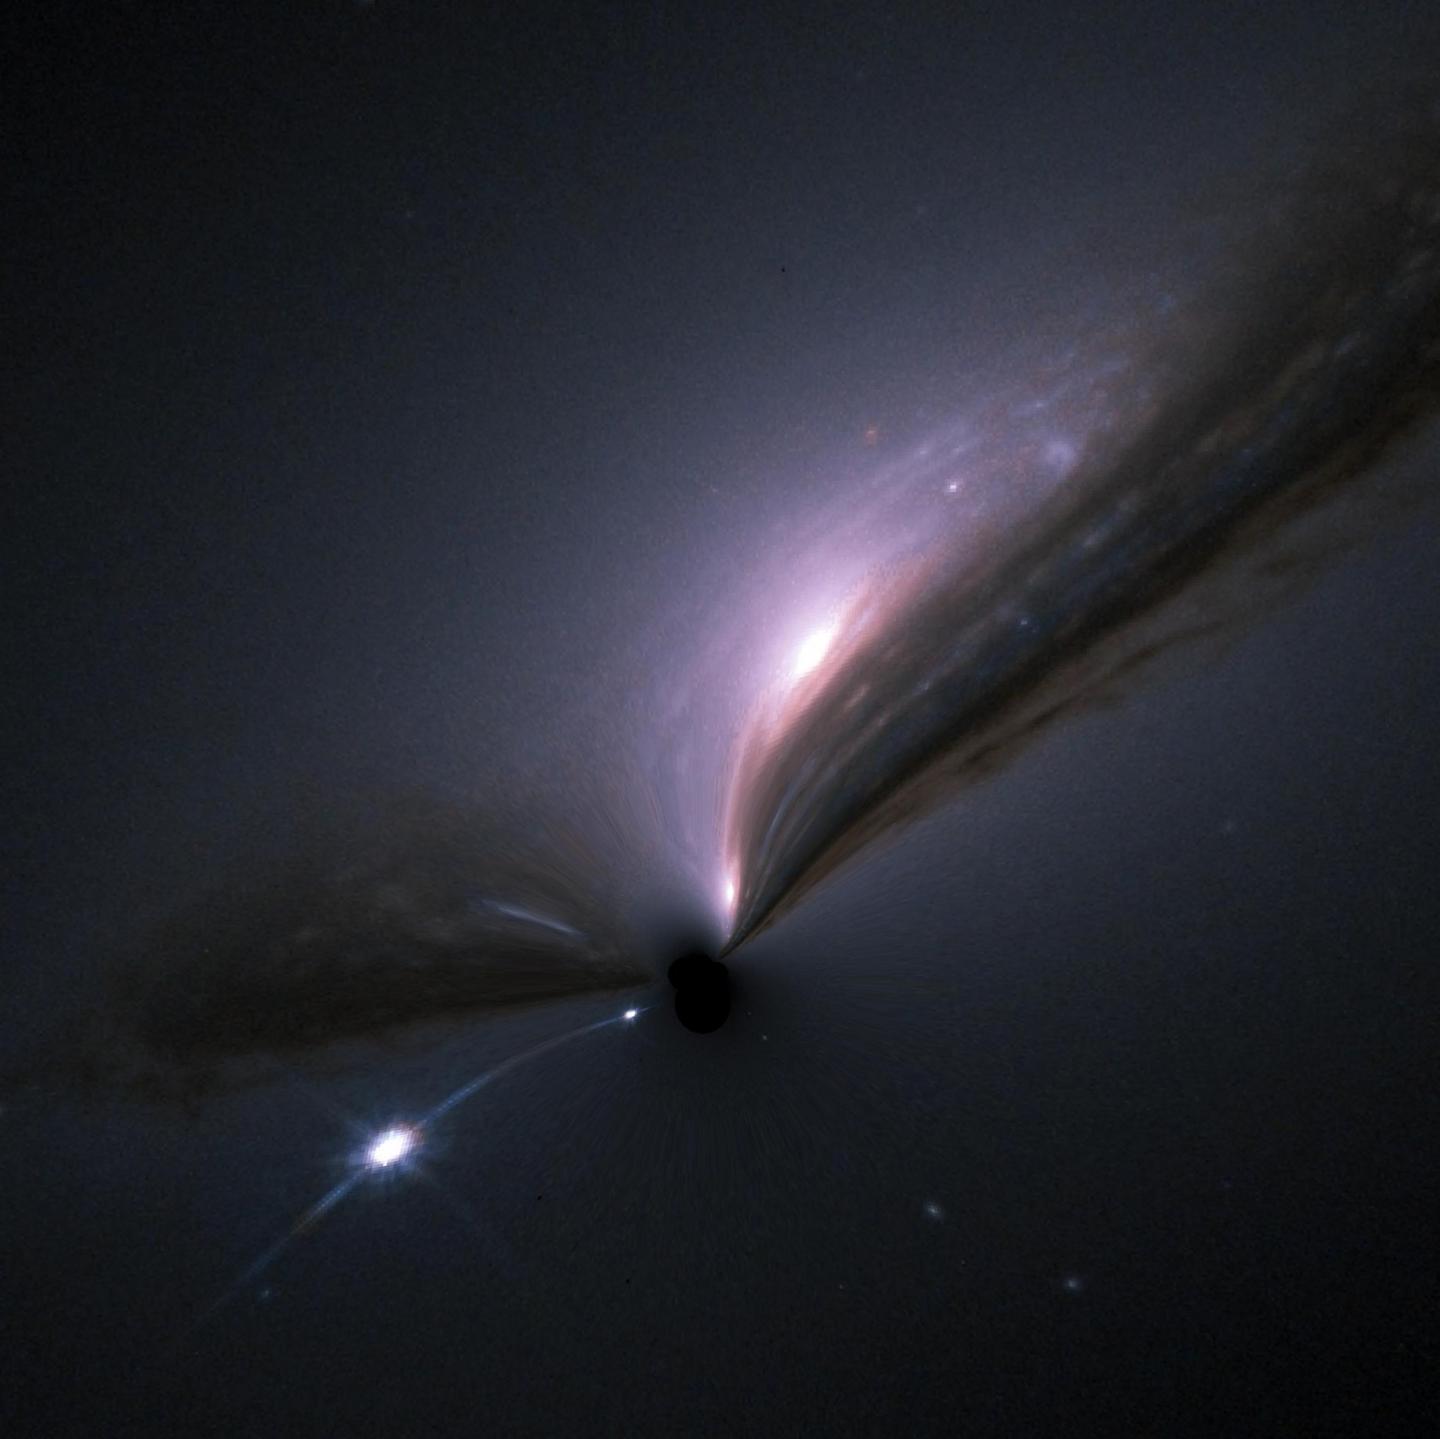 Black Hole Gravitational Lensing